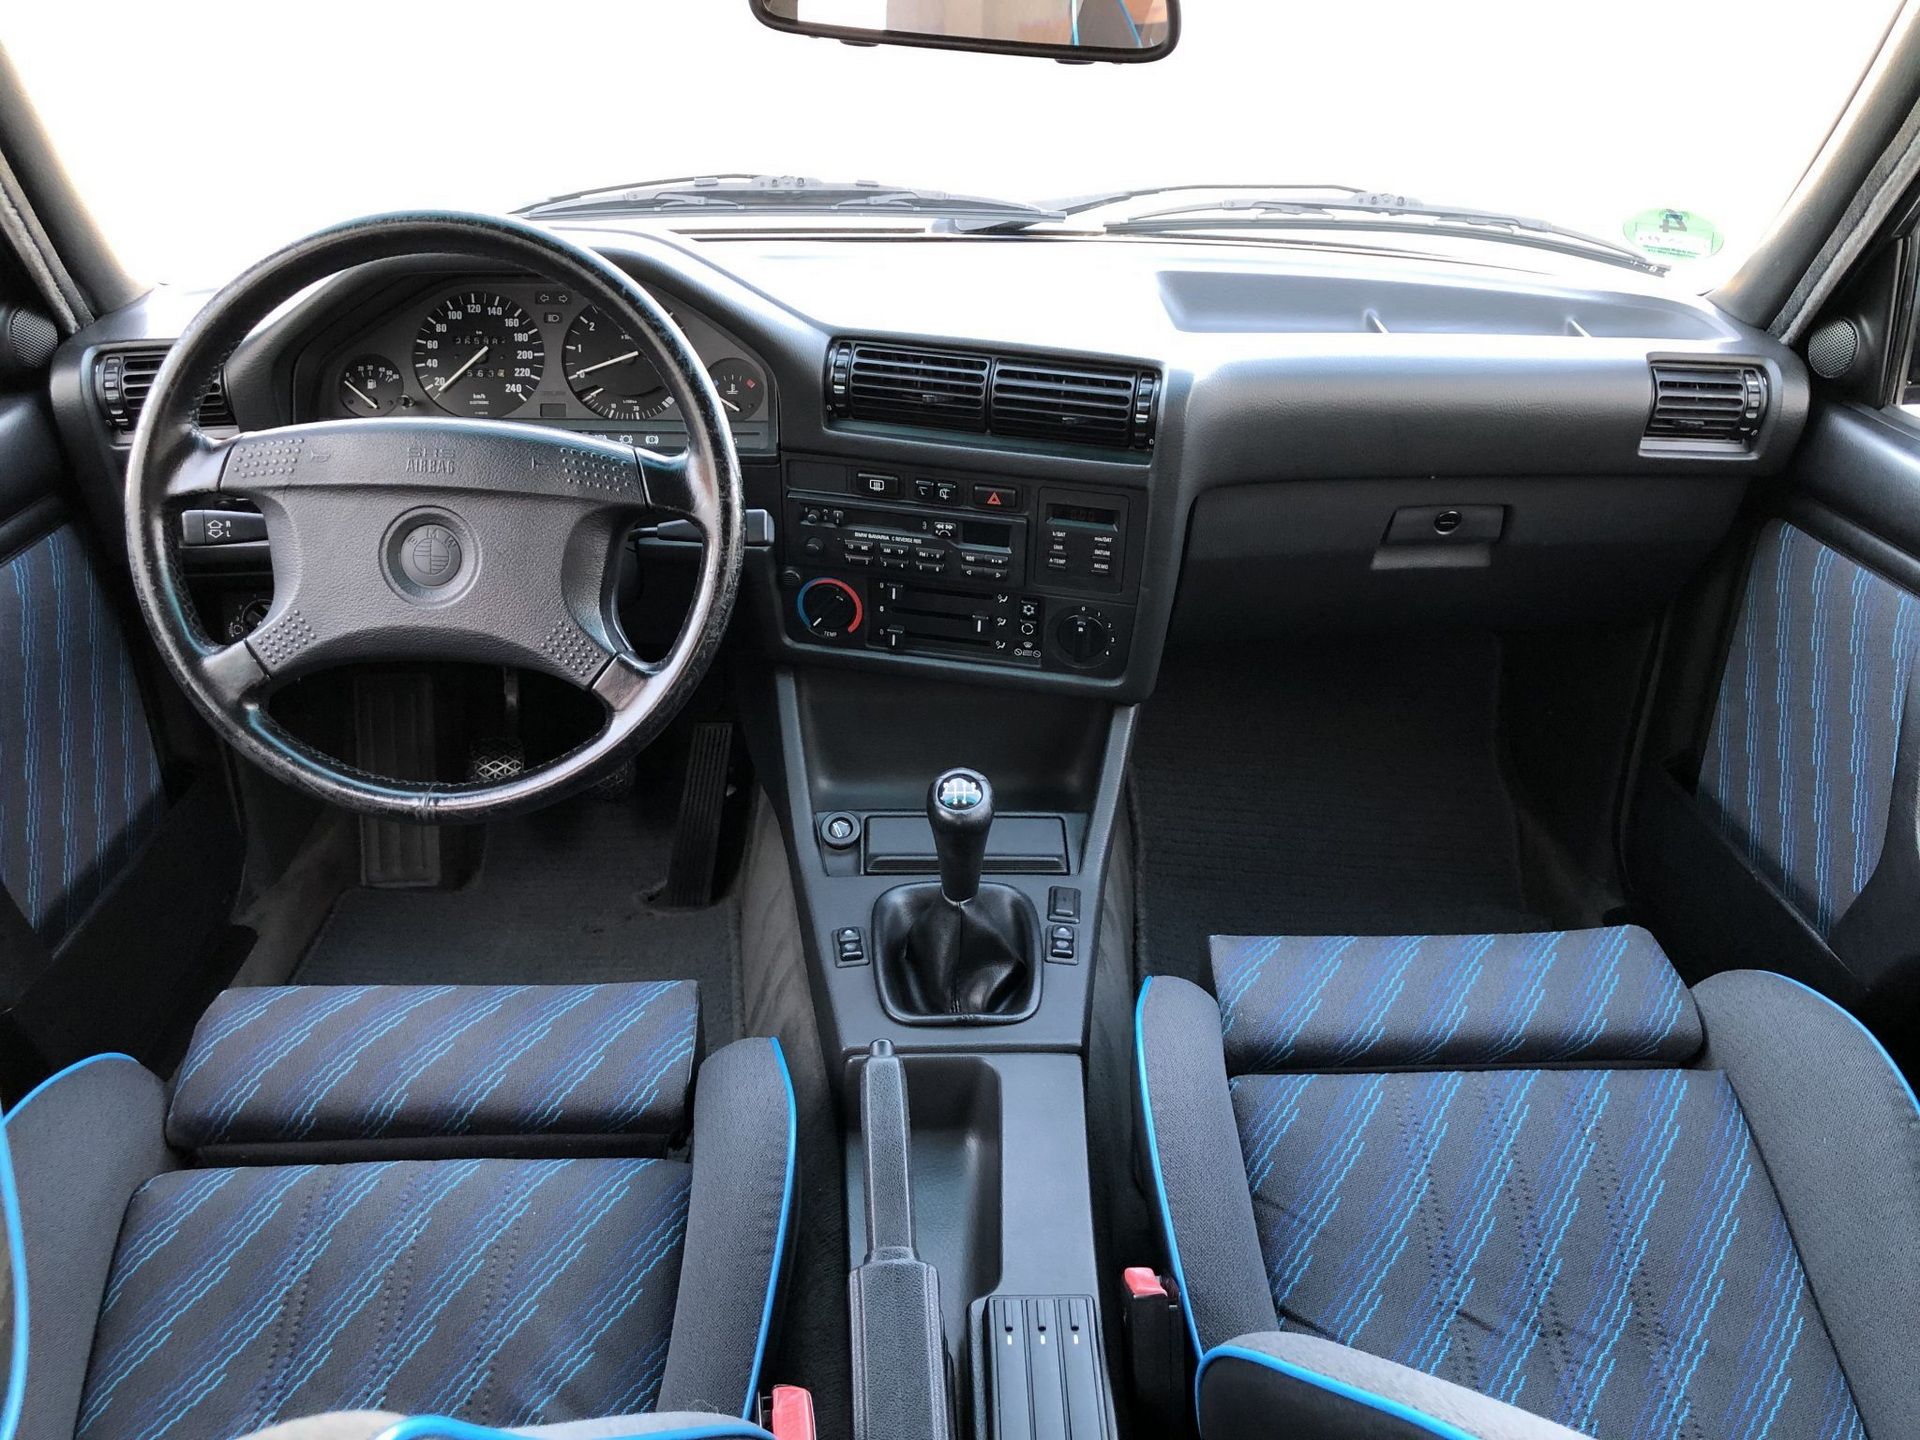 BMW E30 318i interior